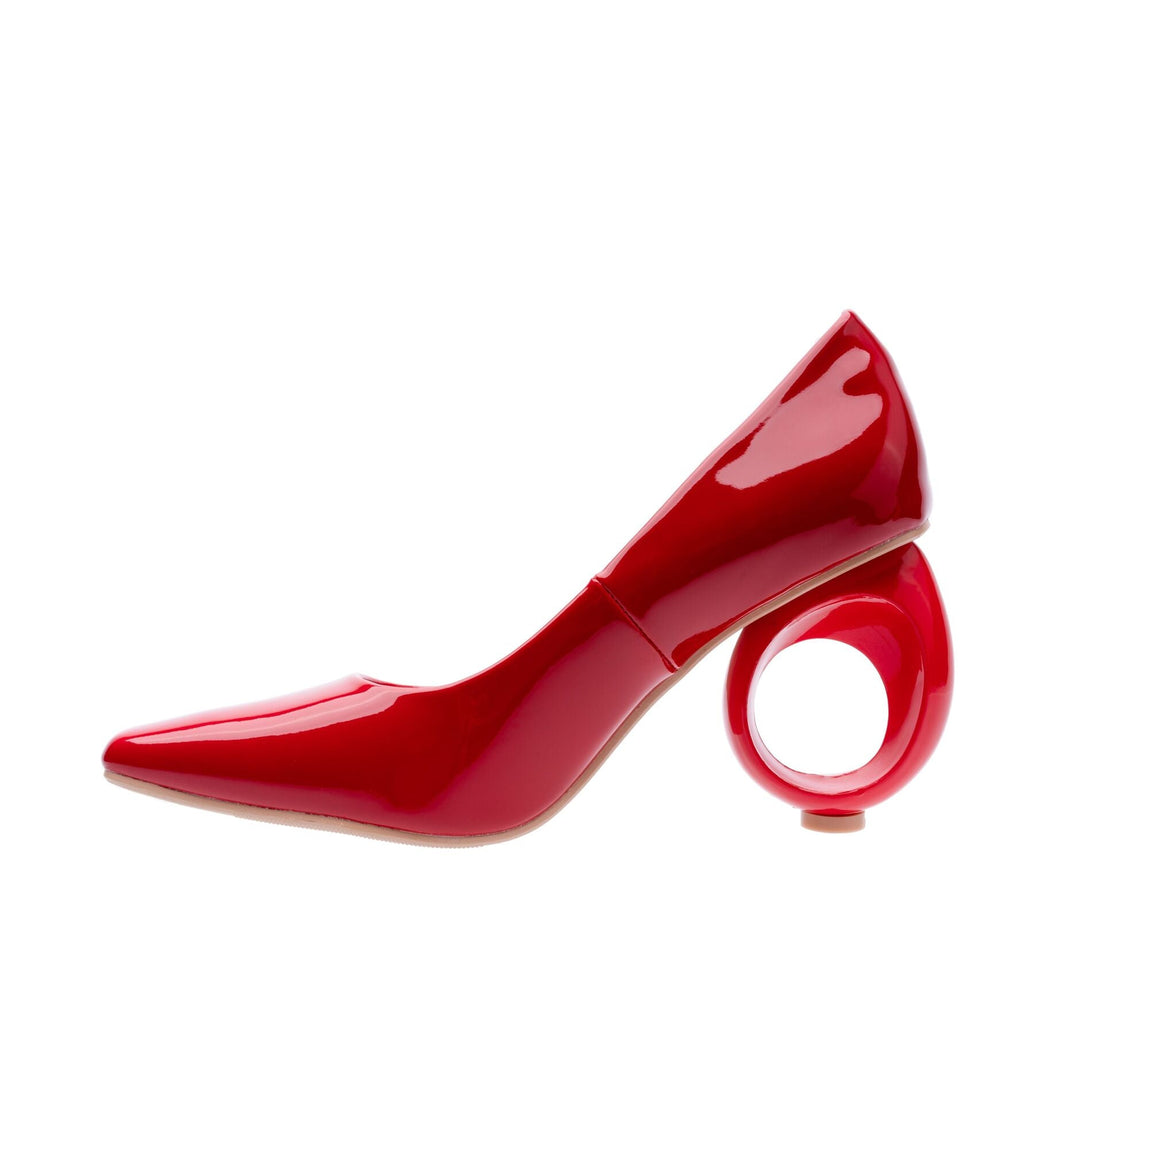 Buy Stelatoes Women's Synthetic Suede Black Heels - 3.5 Inch Heel at  Amazon.in